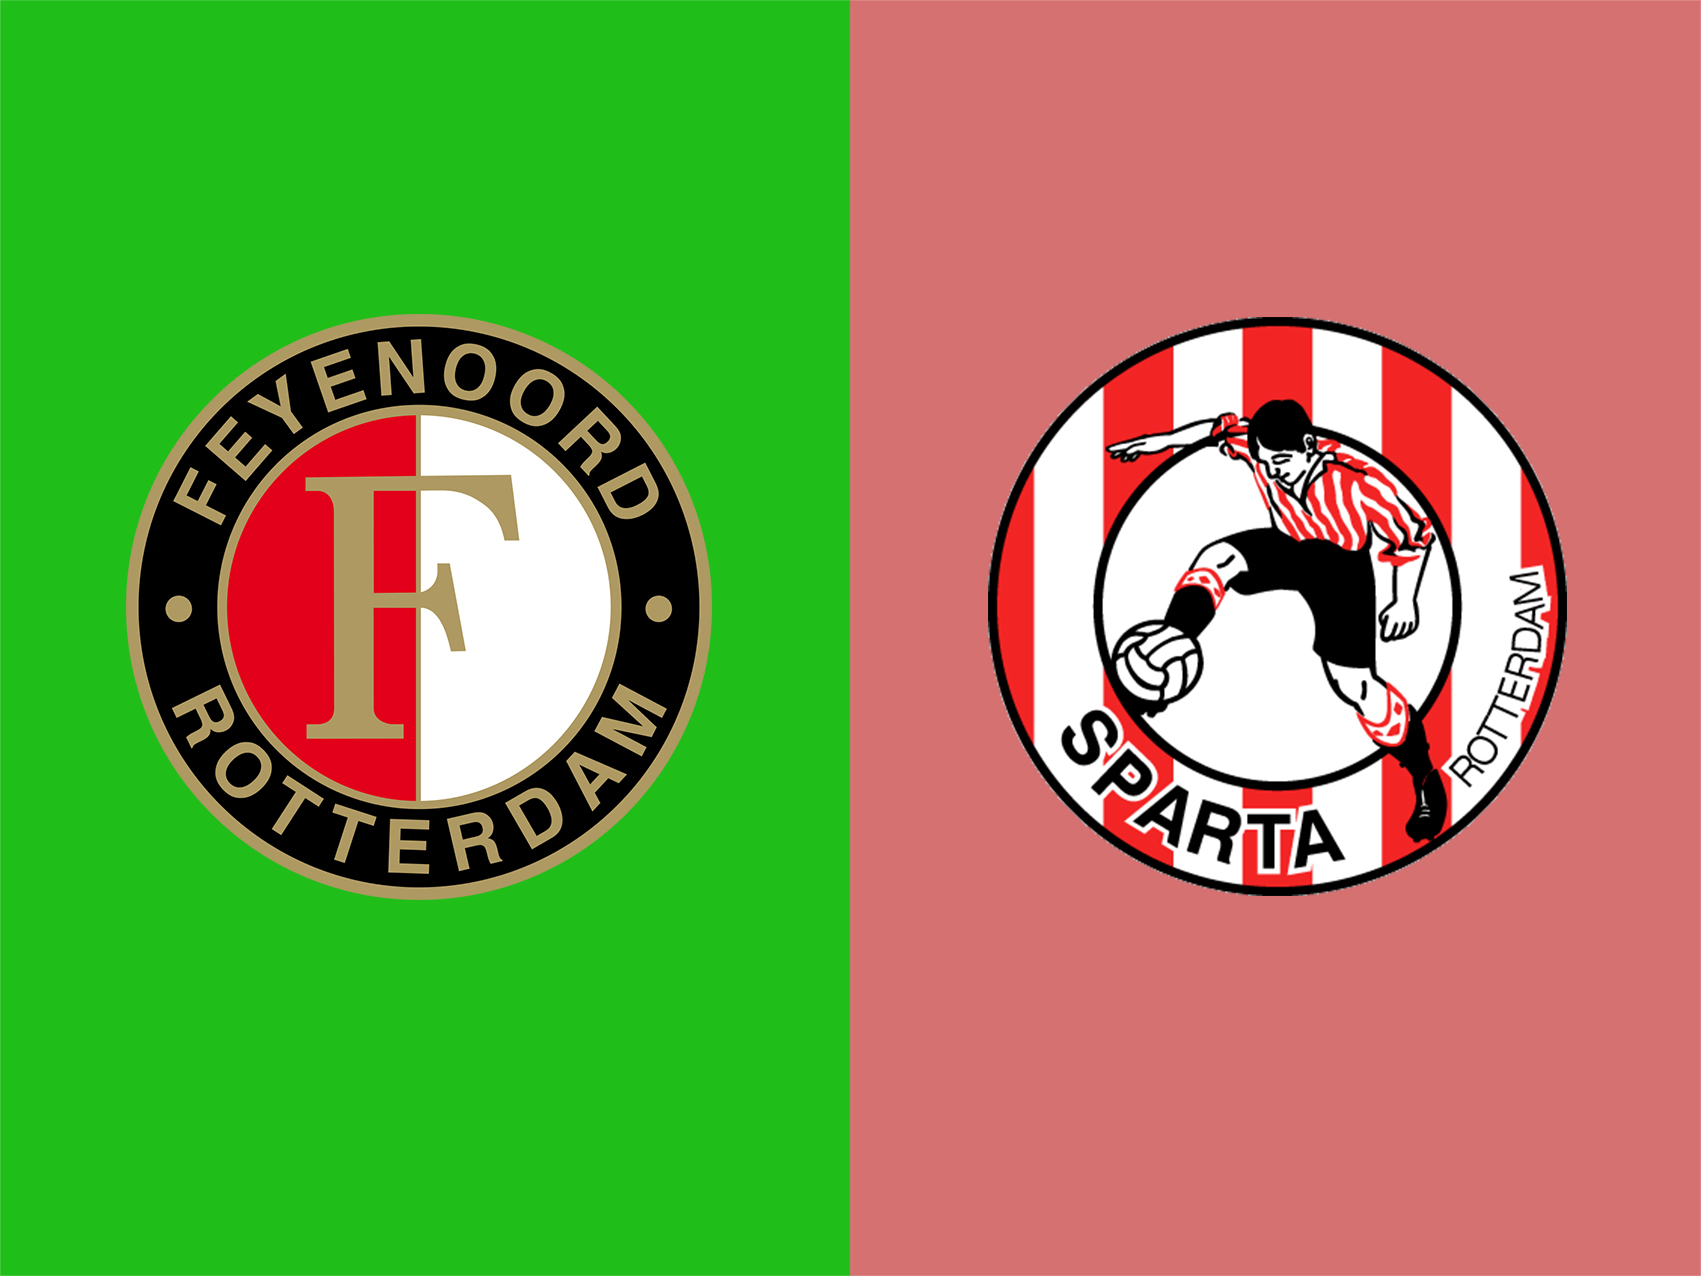 soi-keo-ca-cuoc-bong-da-ngay-2-8-Feyenoord-vs-Sparta Rotterdam-tim-kiem-chien-thang-b9 1